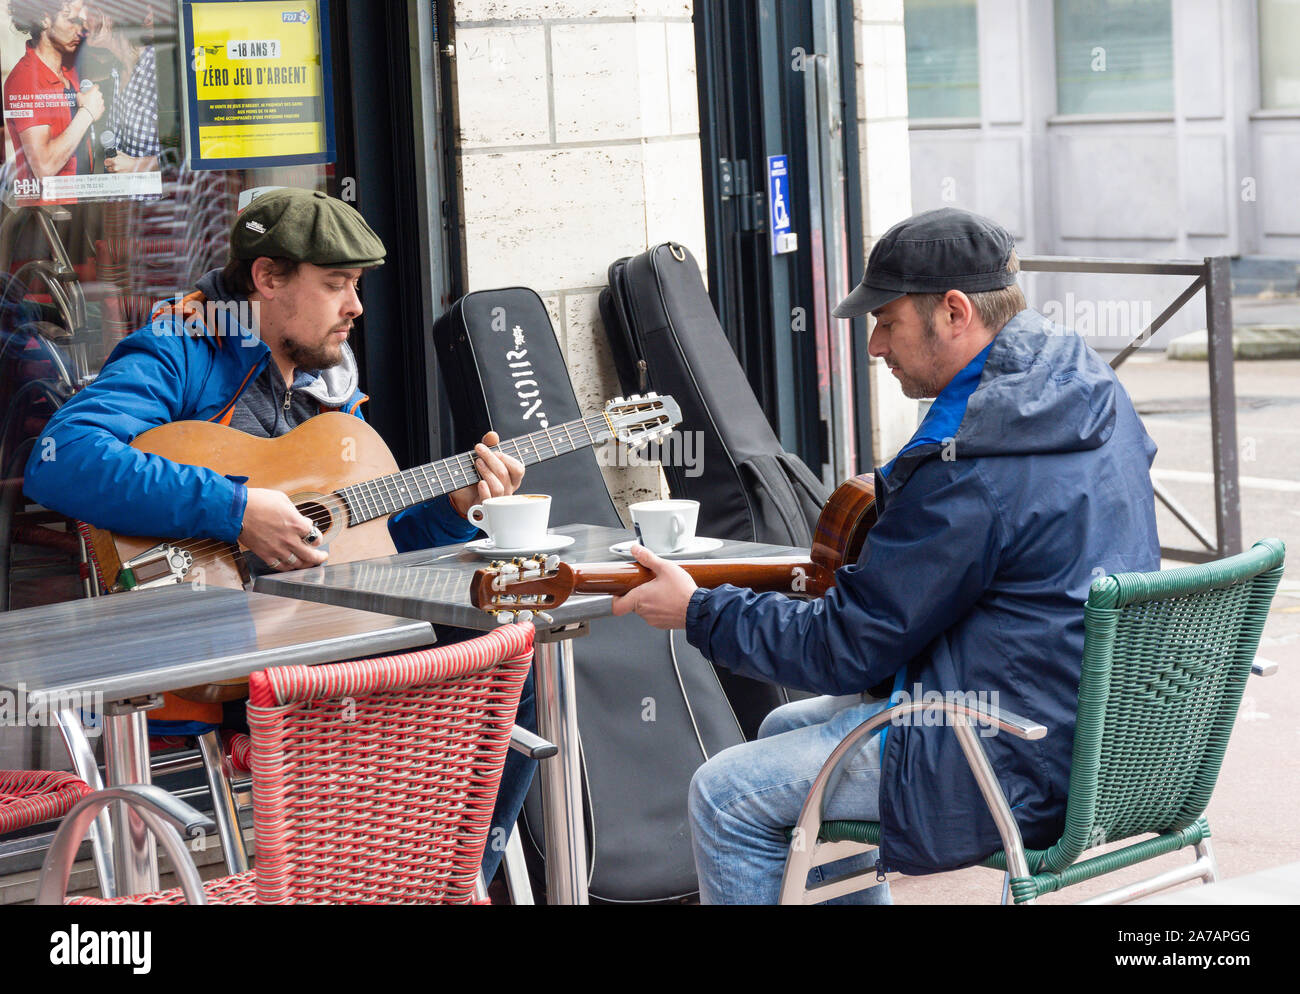 Giovani uomini la riproduzione di chitarre in outdoor cafe, luogo Barthélémy, Rouen, Normandia, Francia Foto Stock